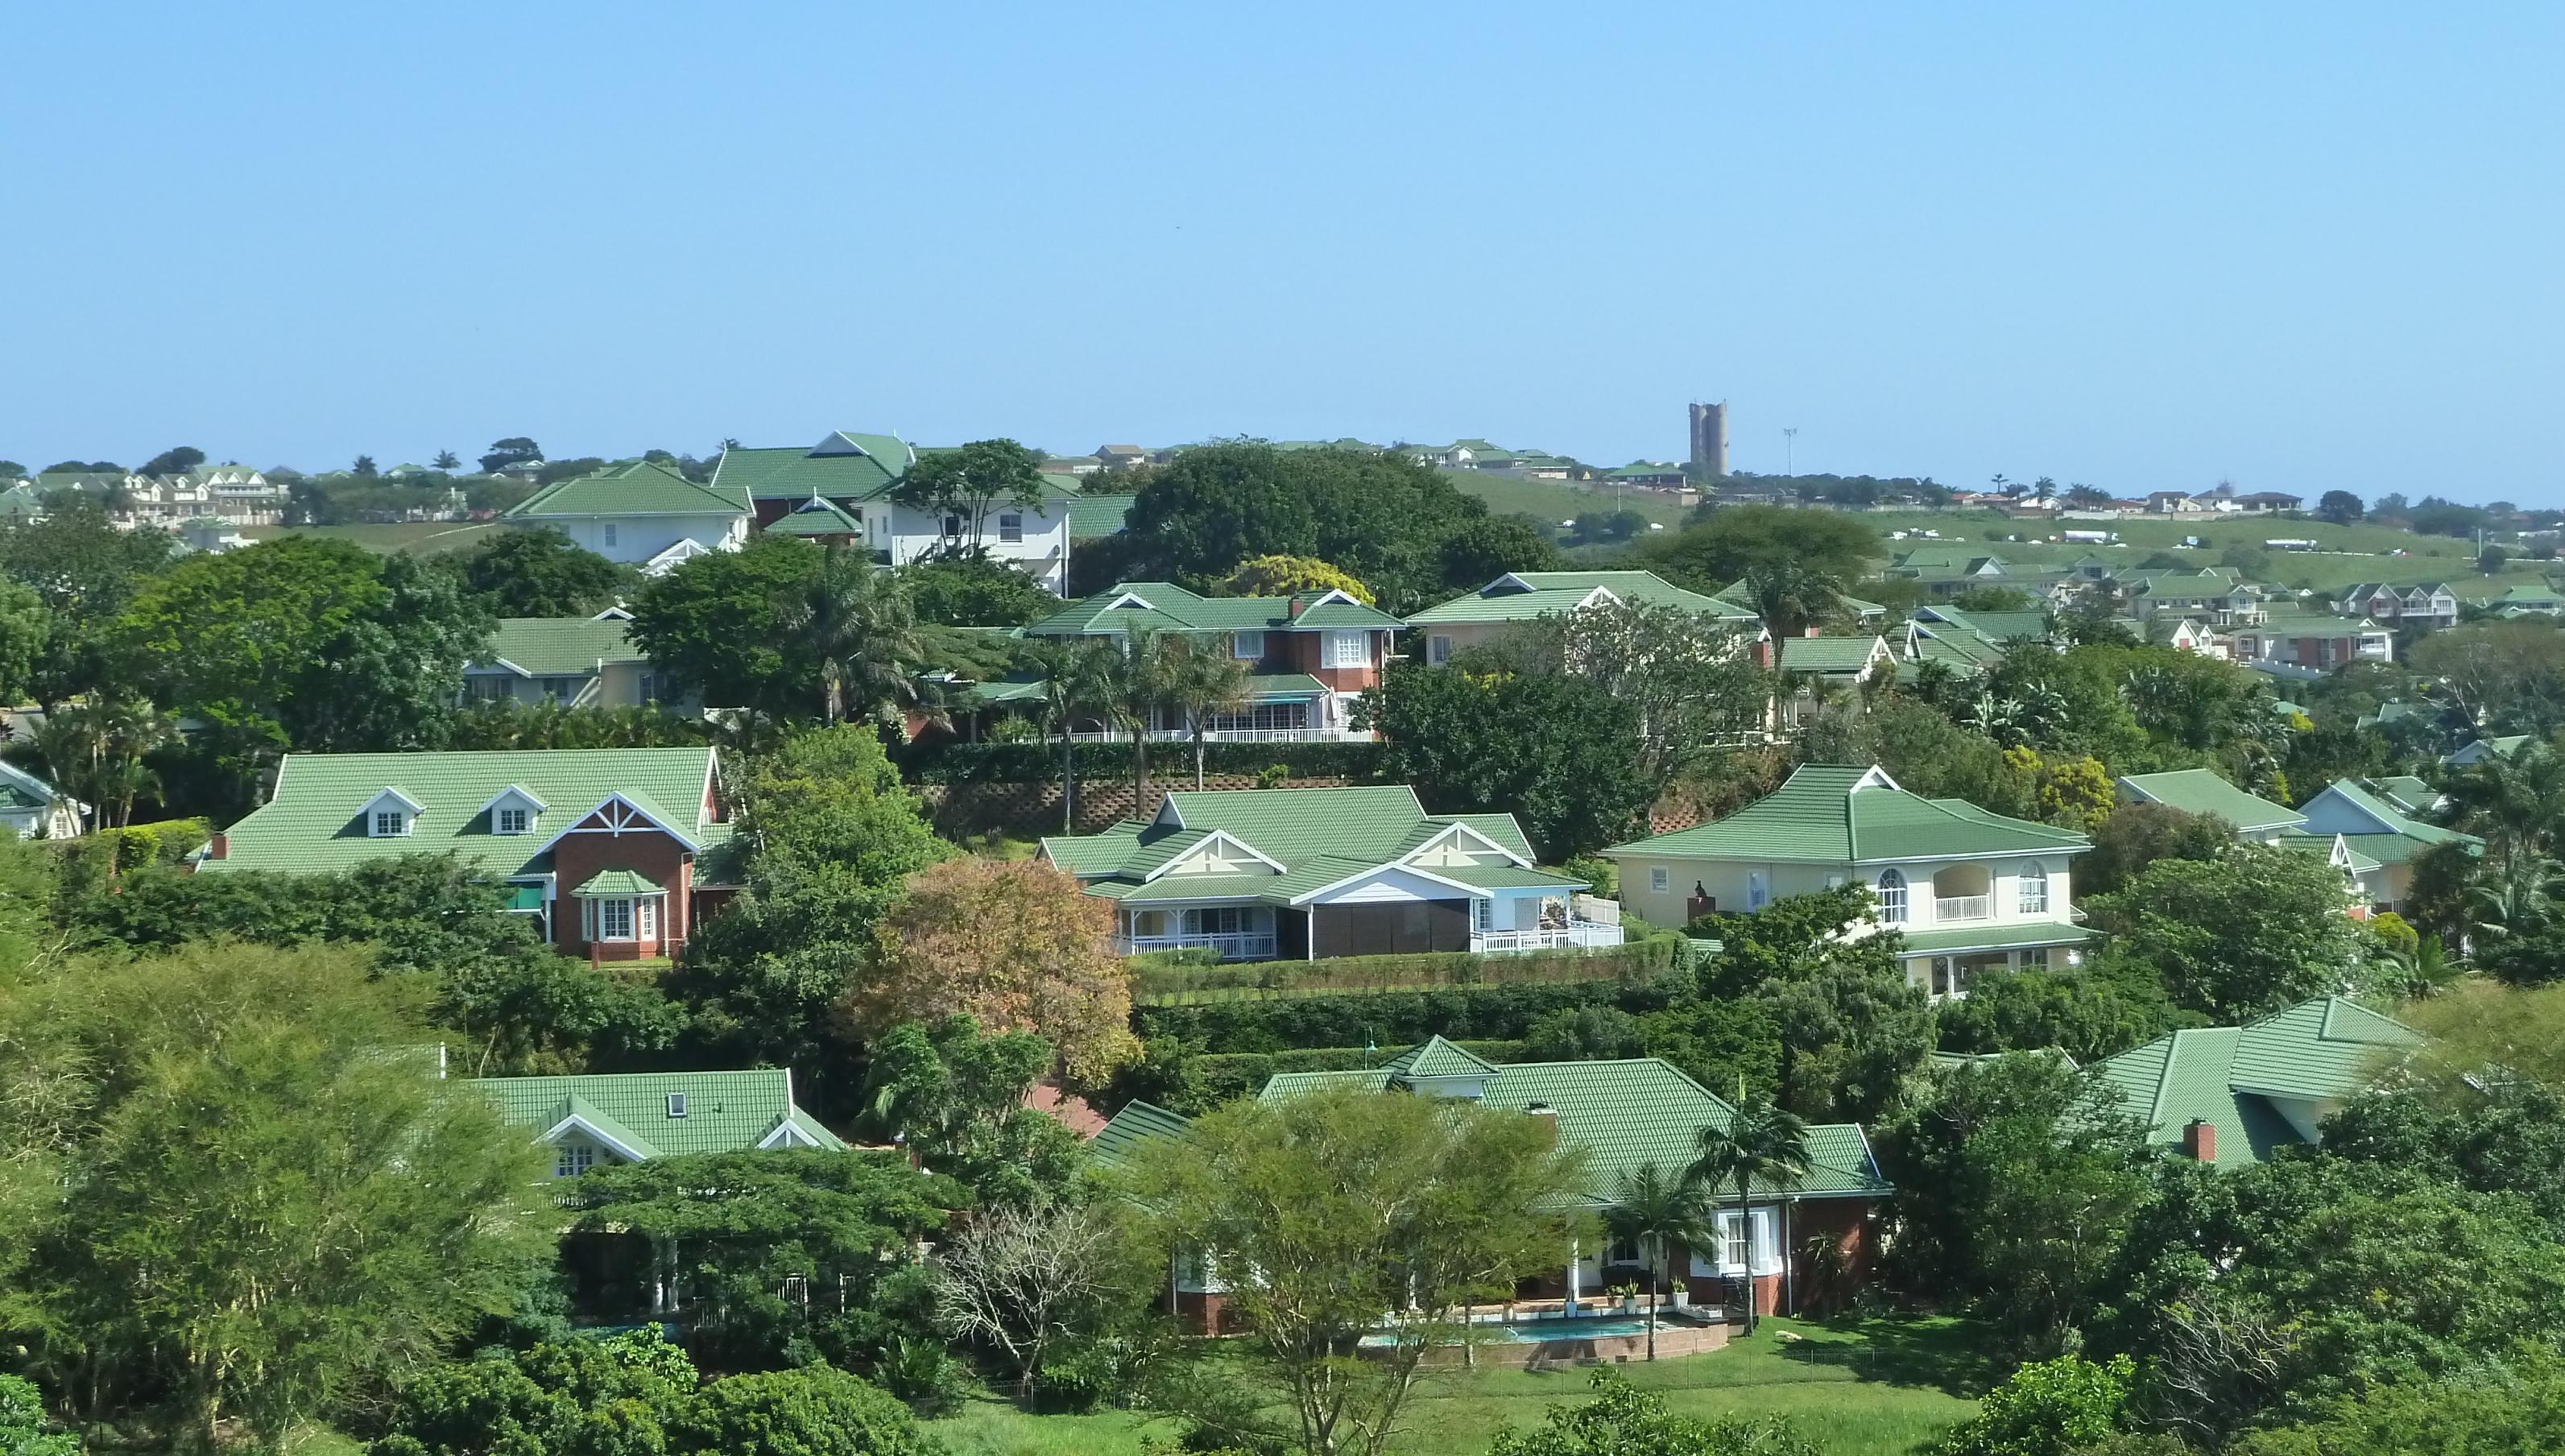 Blick auf die Häuser des Mount Edgecombe Country Club Estate 2 in Durban, Südafrika. Wohngegend mit vielen Bäumen und grünen Hausdächern .